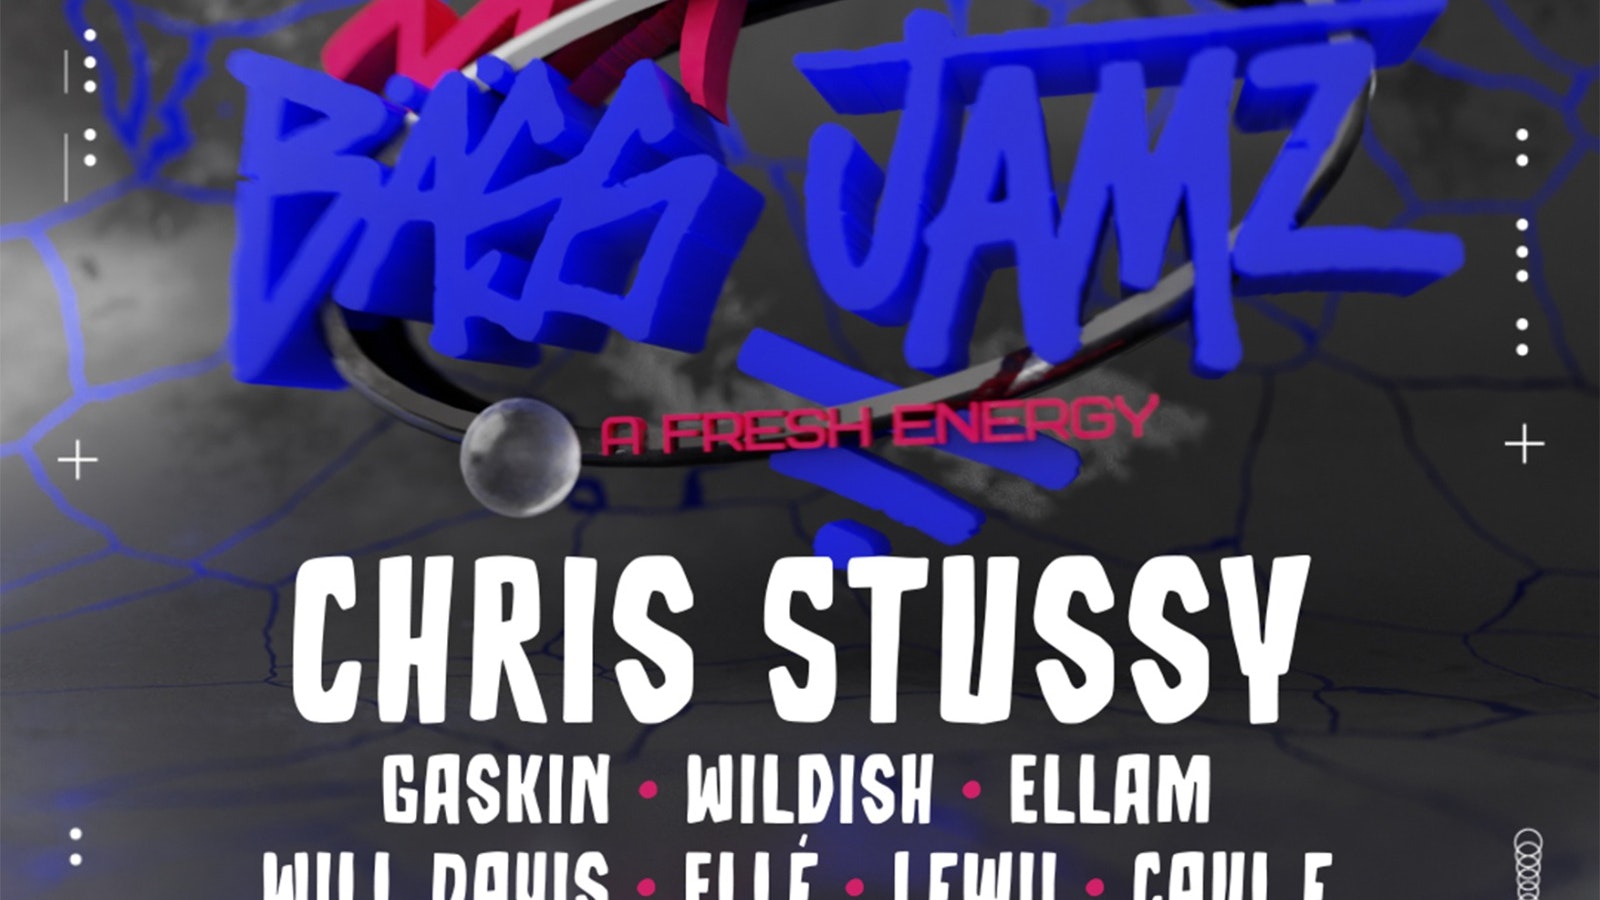 CHRIS STUSSY & BASS JAMZ | UTOPIAR feat. EURASIA